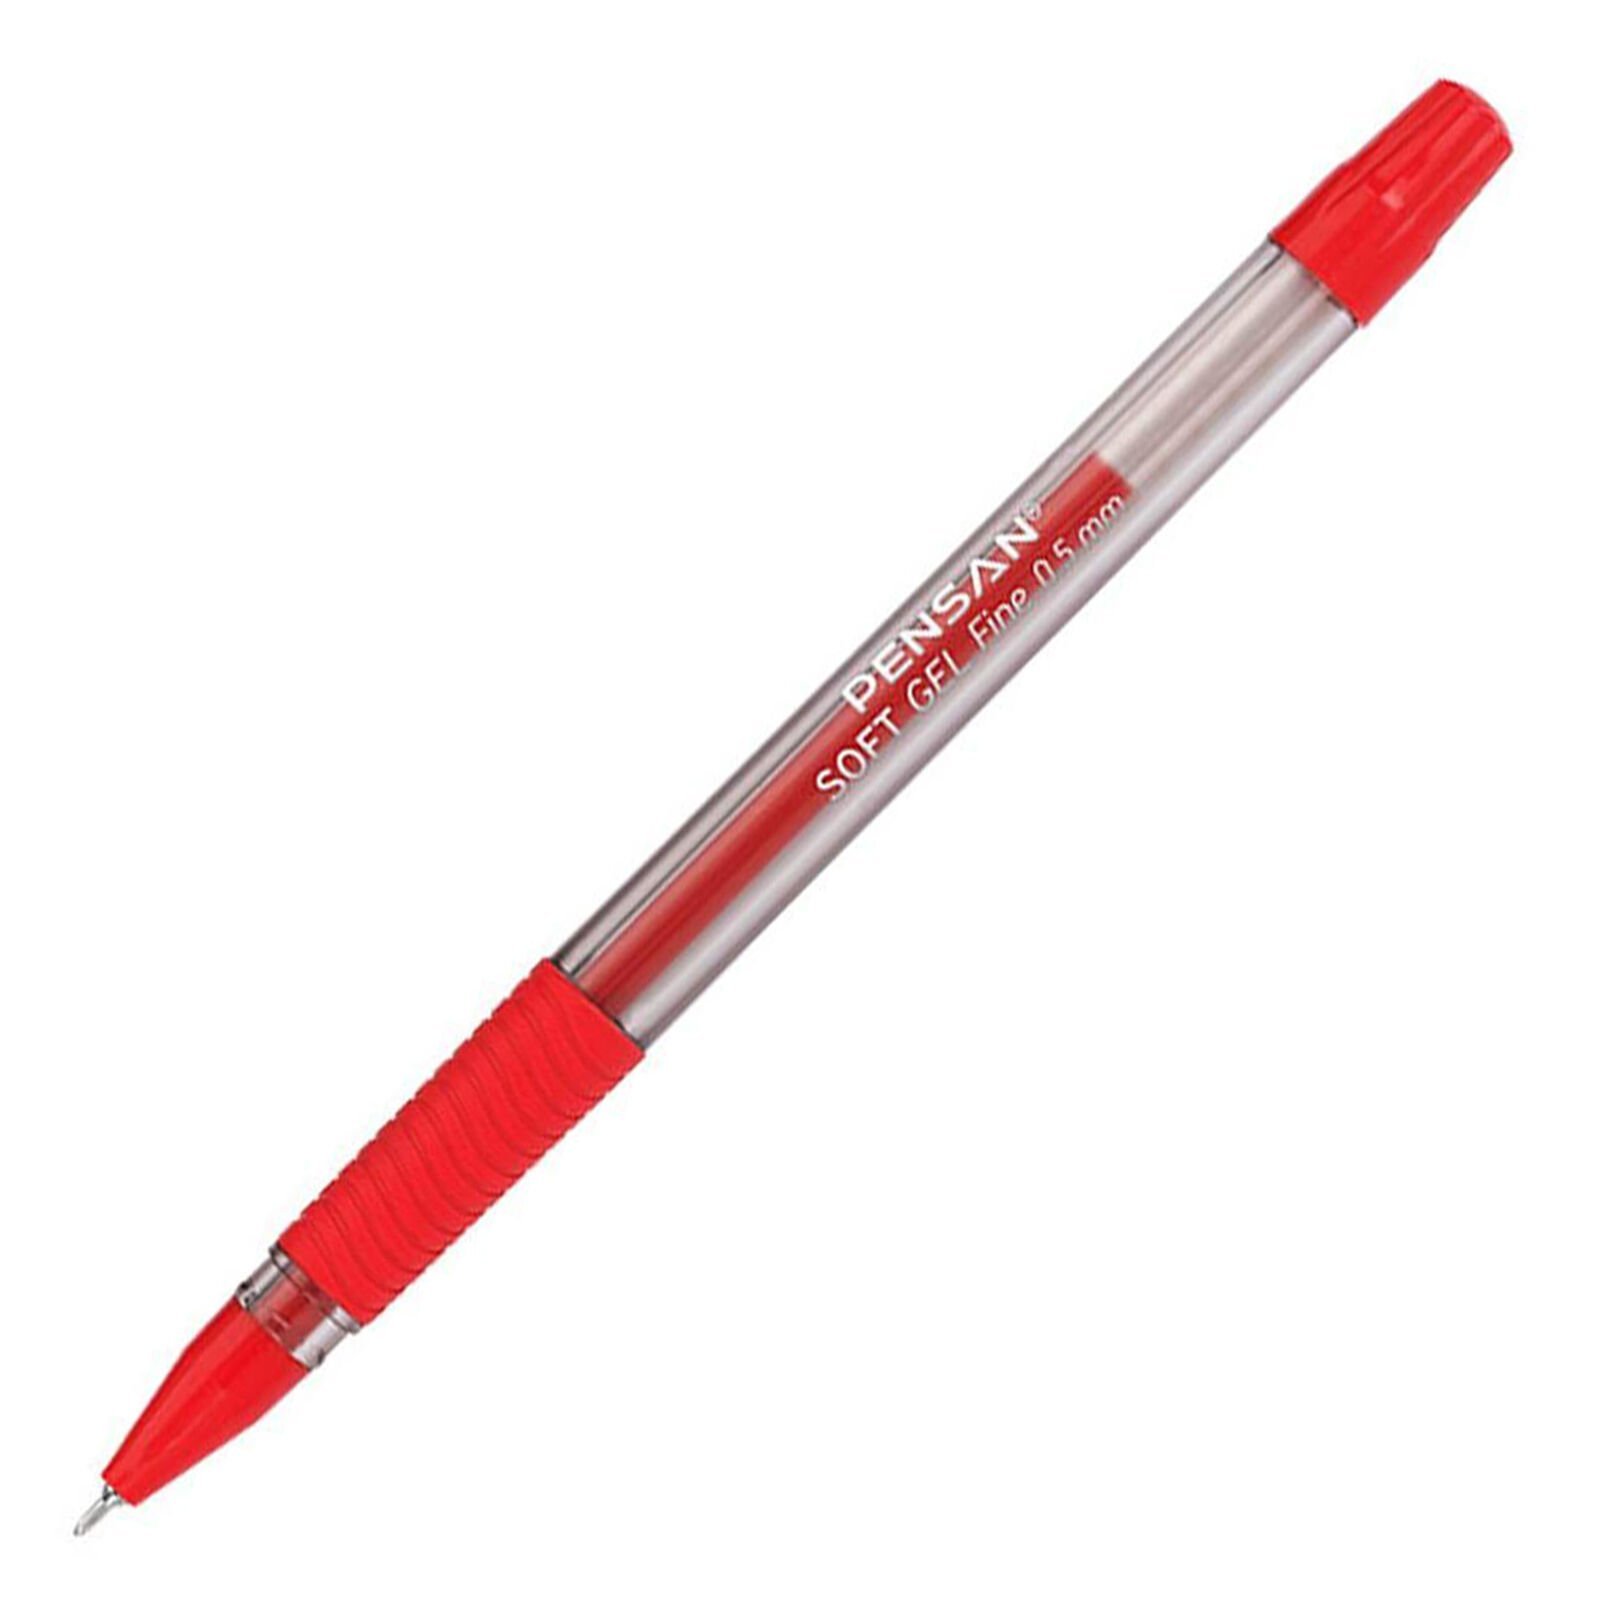 Pensan Soft Gel Fıne Tükenmez Kalem, 0.5 mm, Kırmızı